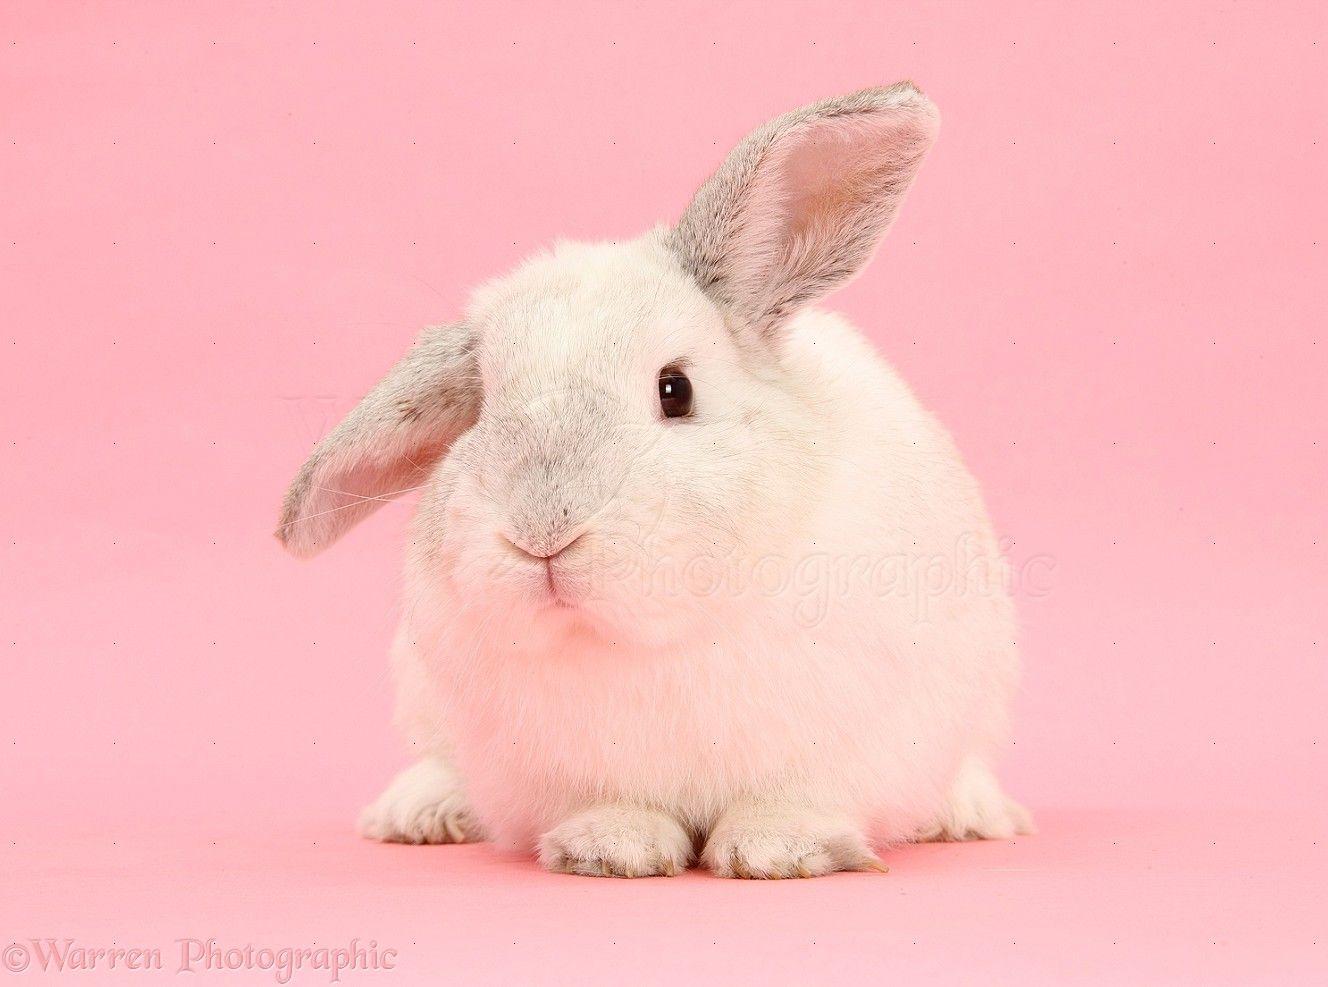 White rabbit on pink background photo WP26921